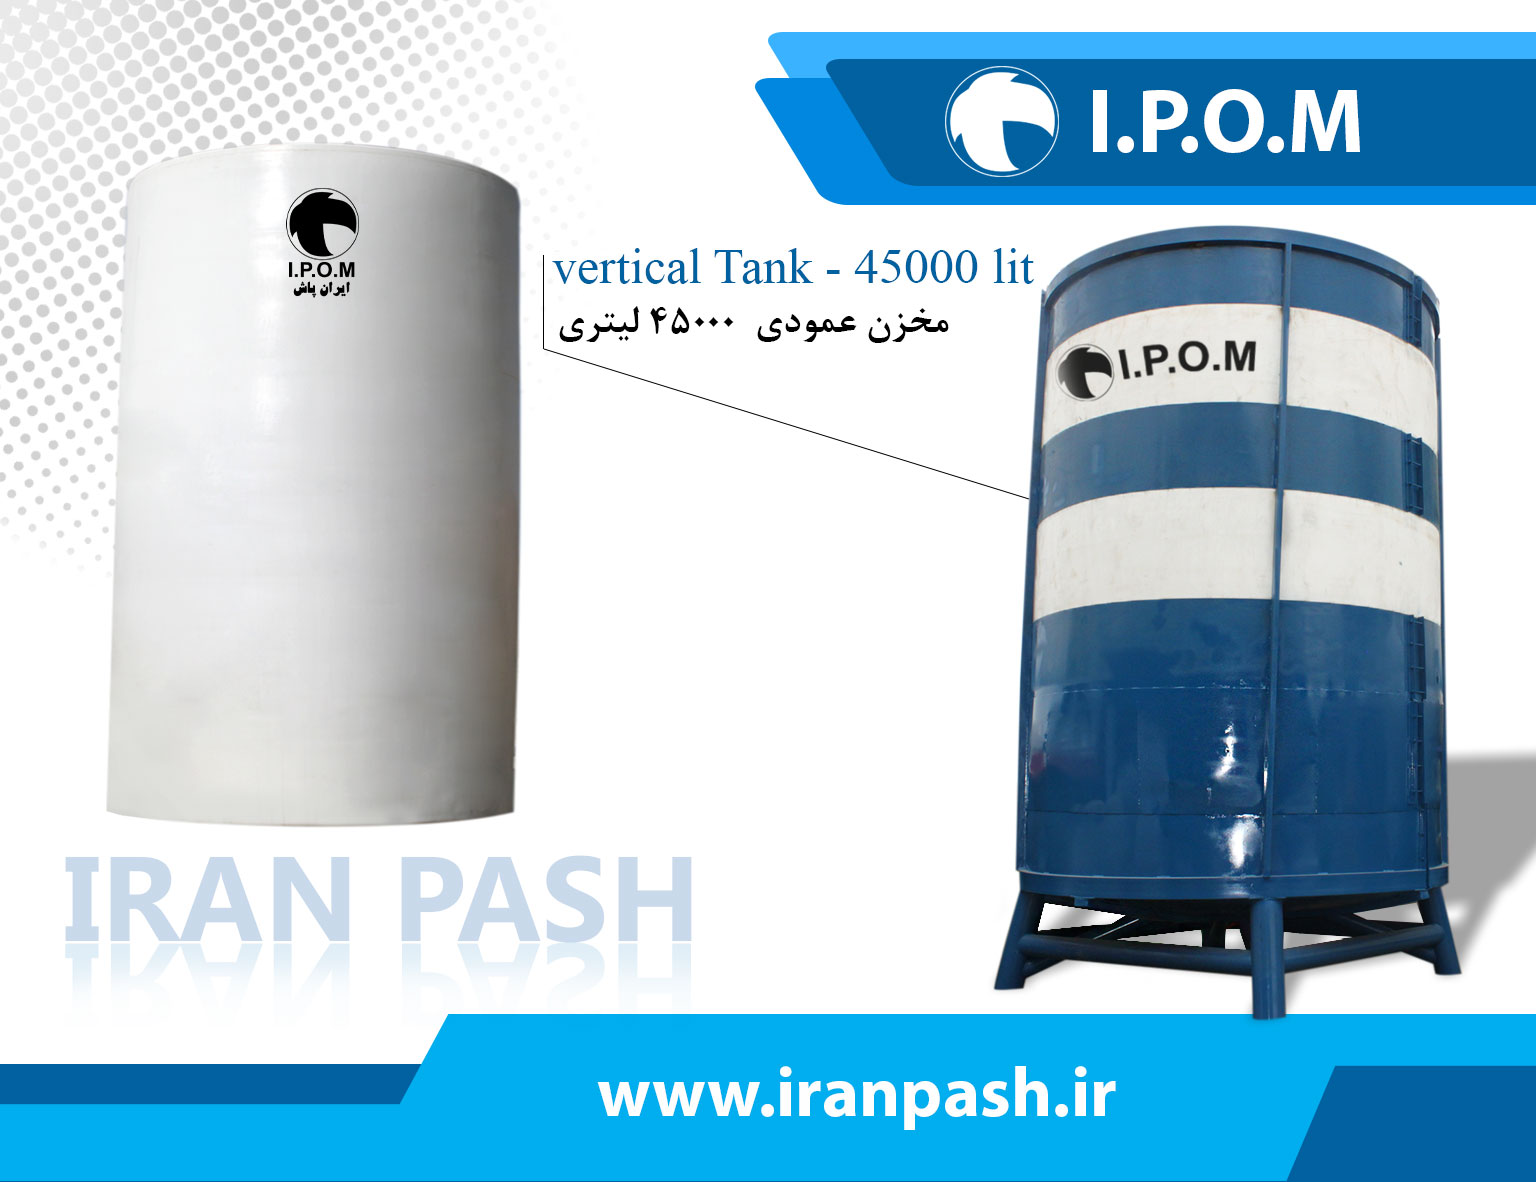 45000 liter vertical tank